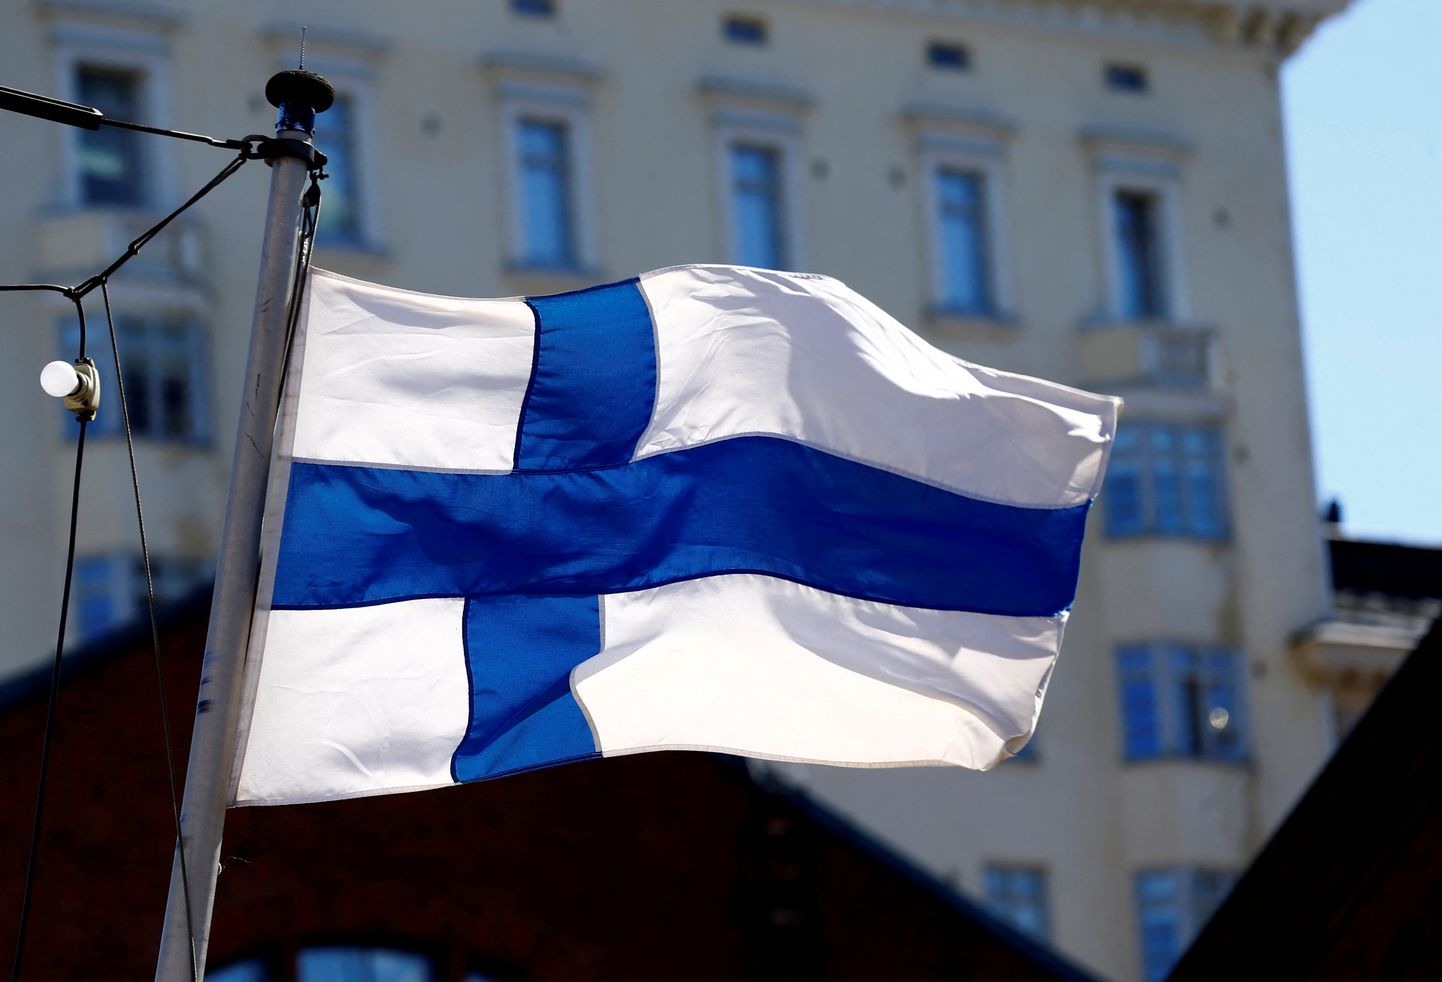 Soome pealinnas Helsingis ja Uusimaa maakonnas kaotatakse alates esmaspäevast kõik avalikele üritustele kehtinud koroonapiirangud.